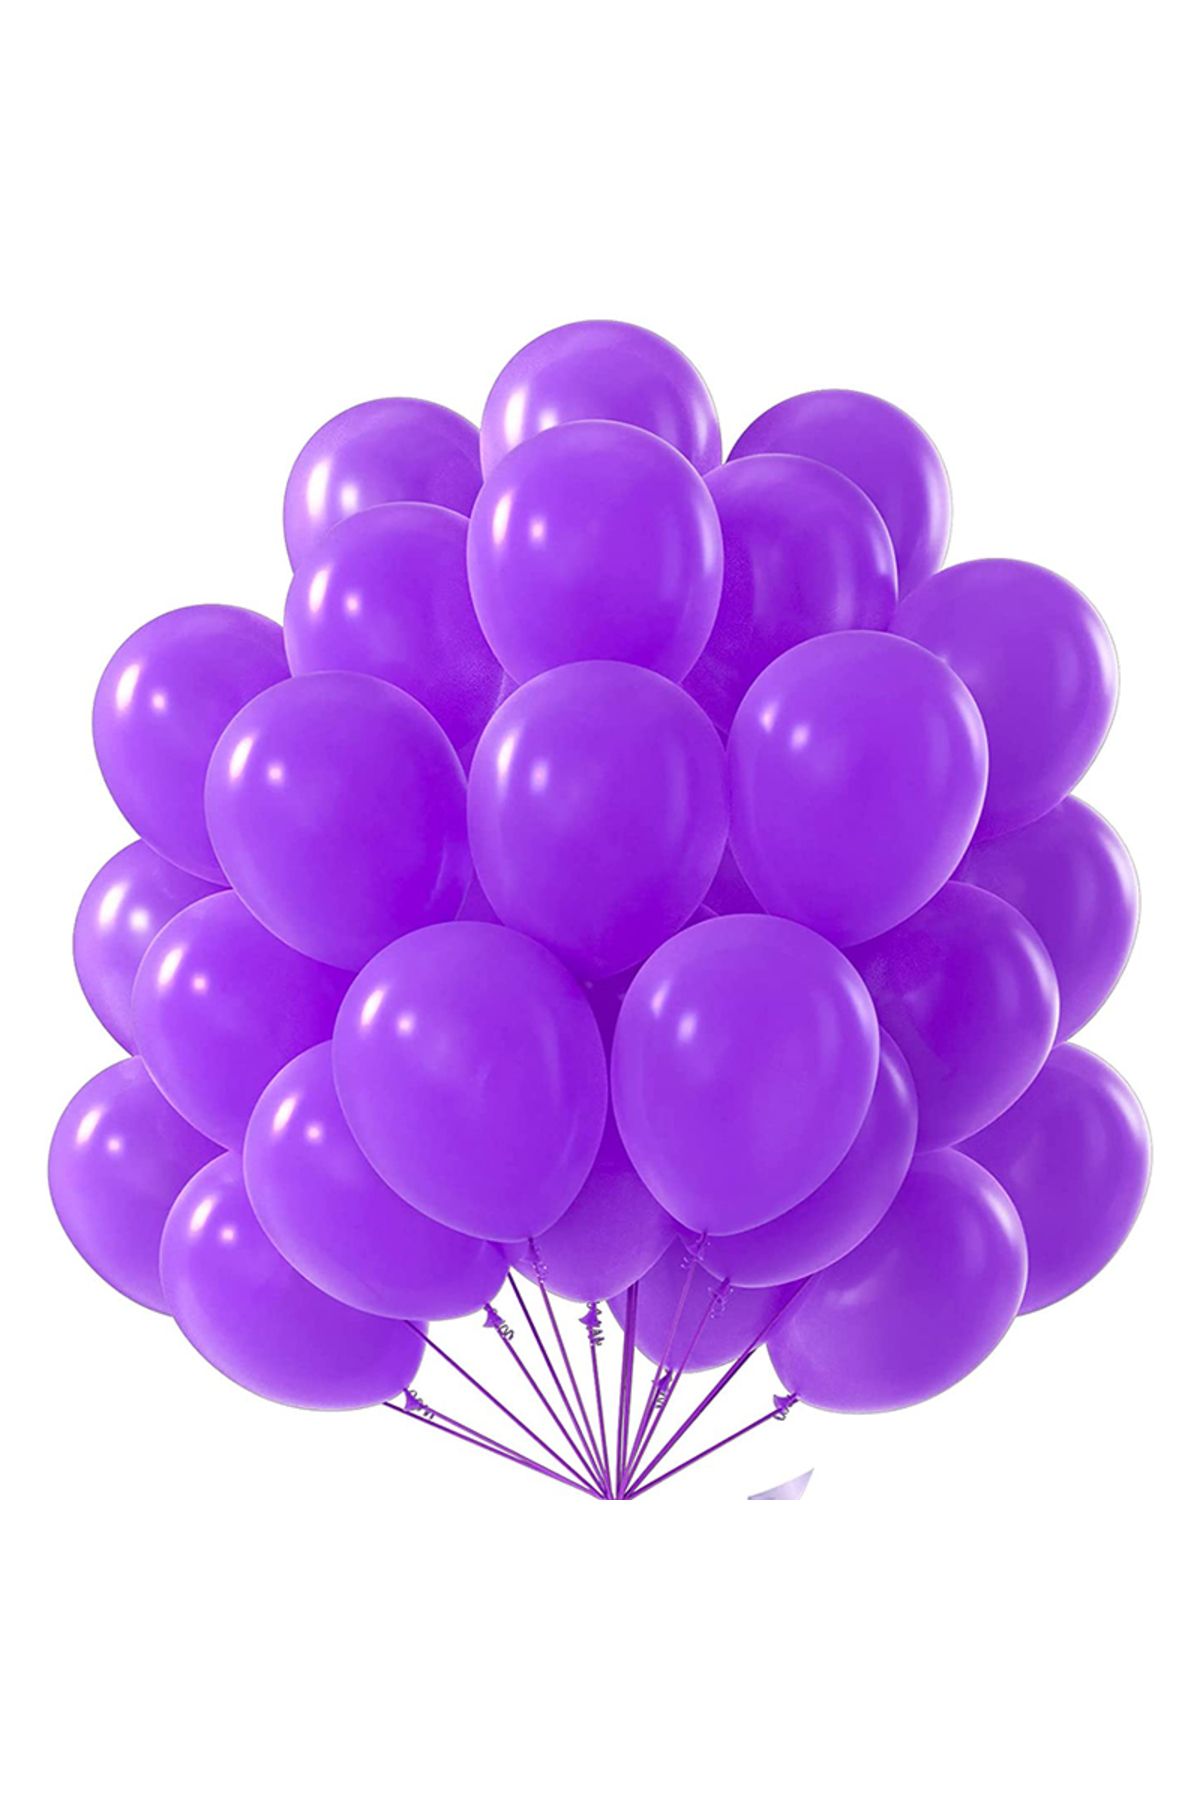 pazariz Lateks Balon Parti Organizasyon Balonu 9/A düğün doğum günü dekorasyon 10 Adet Karışık Renk